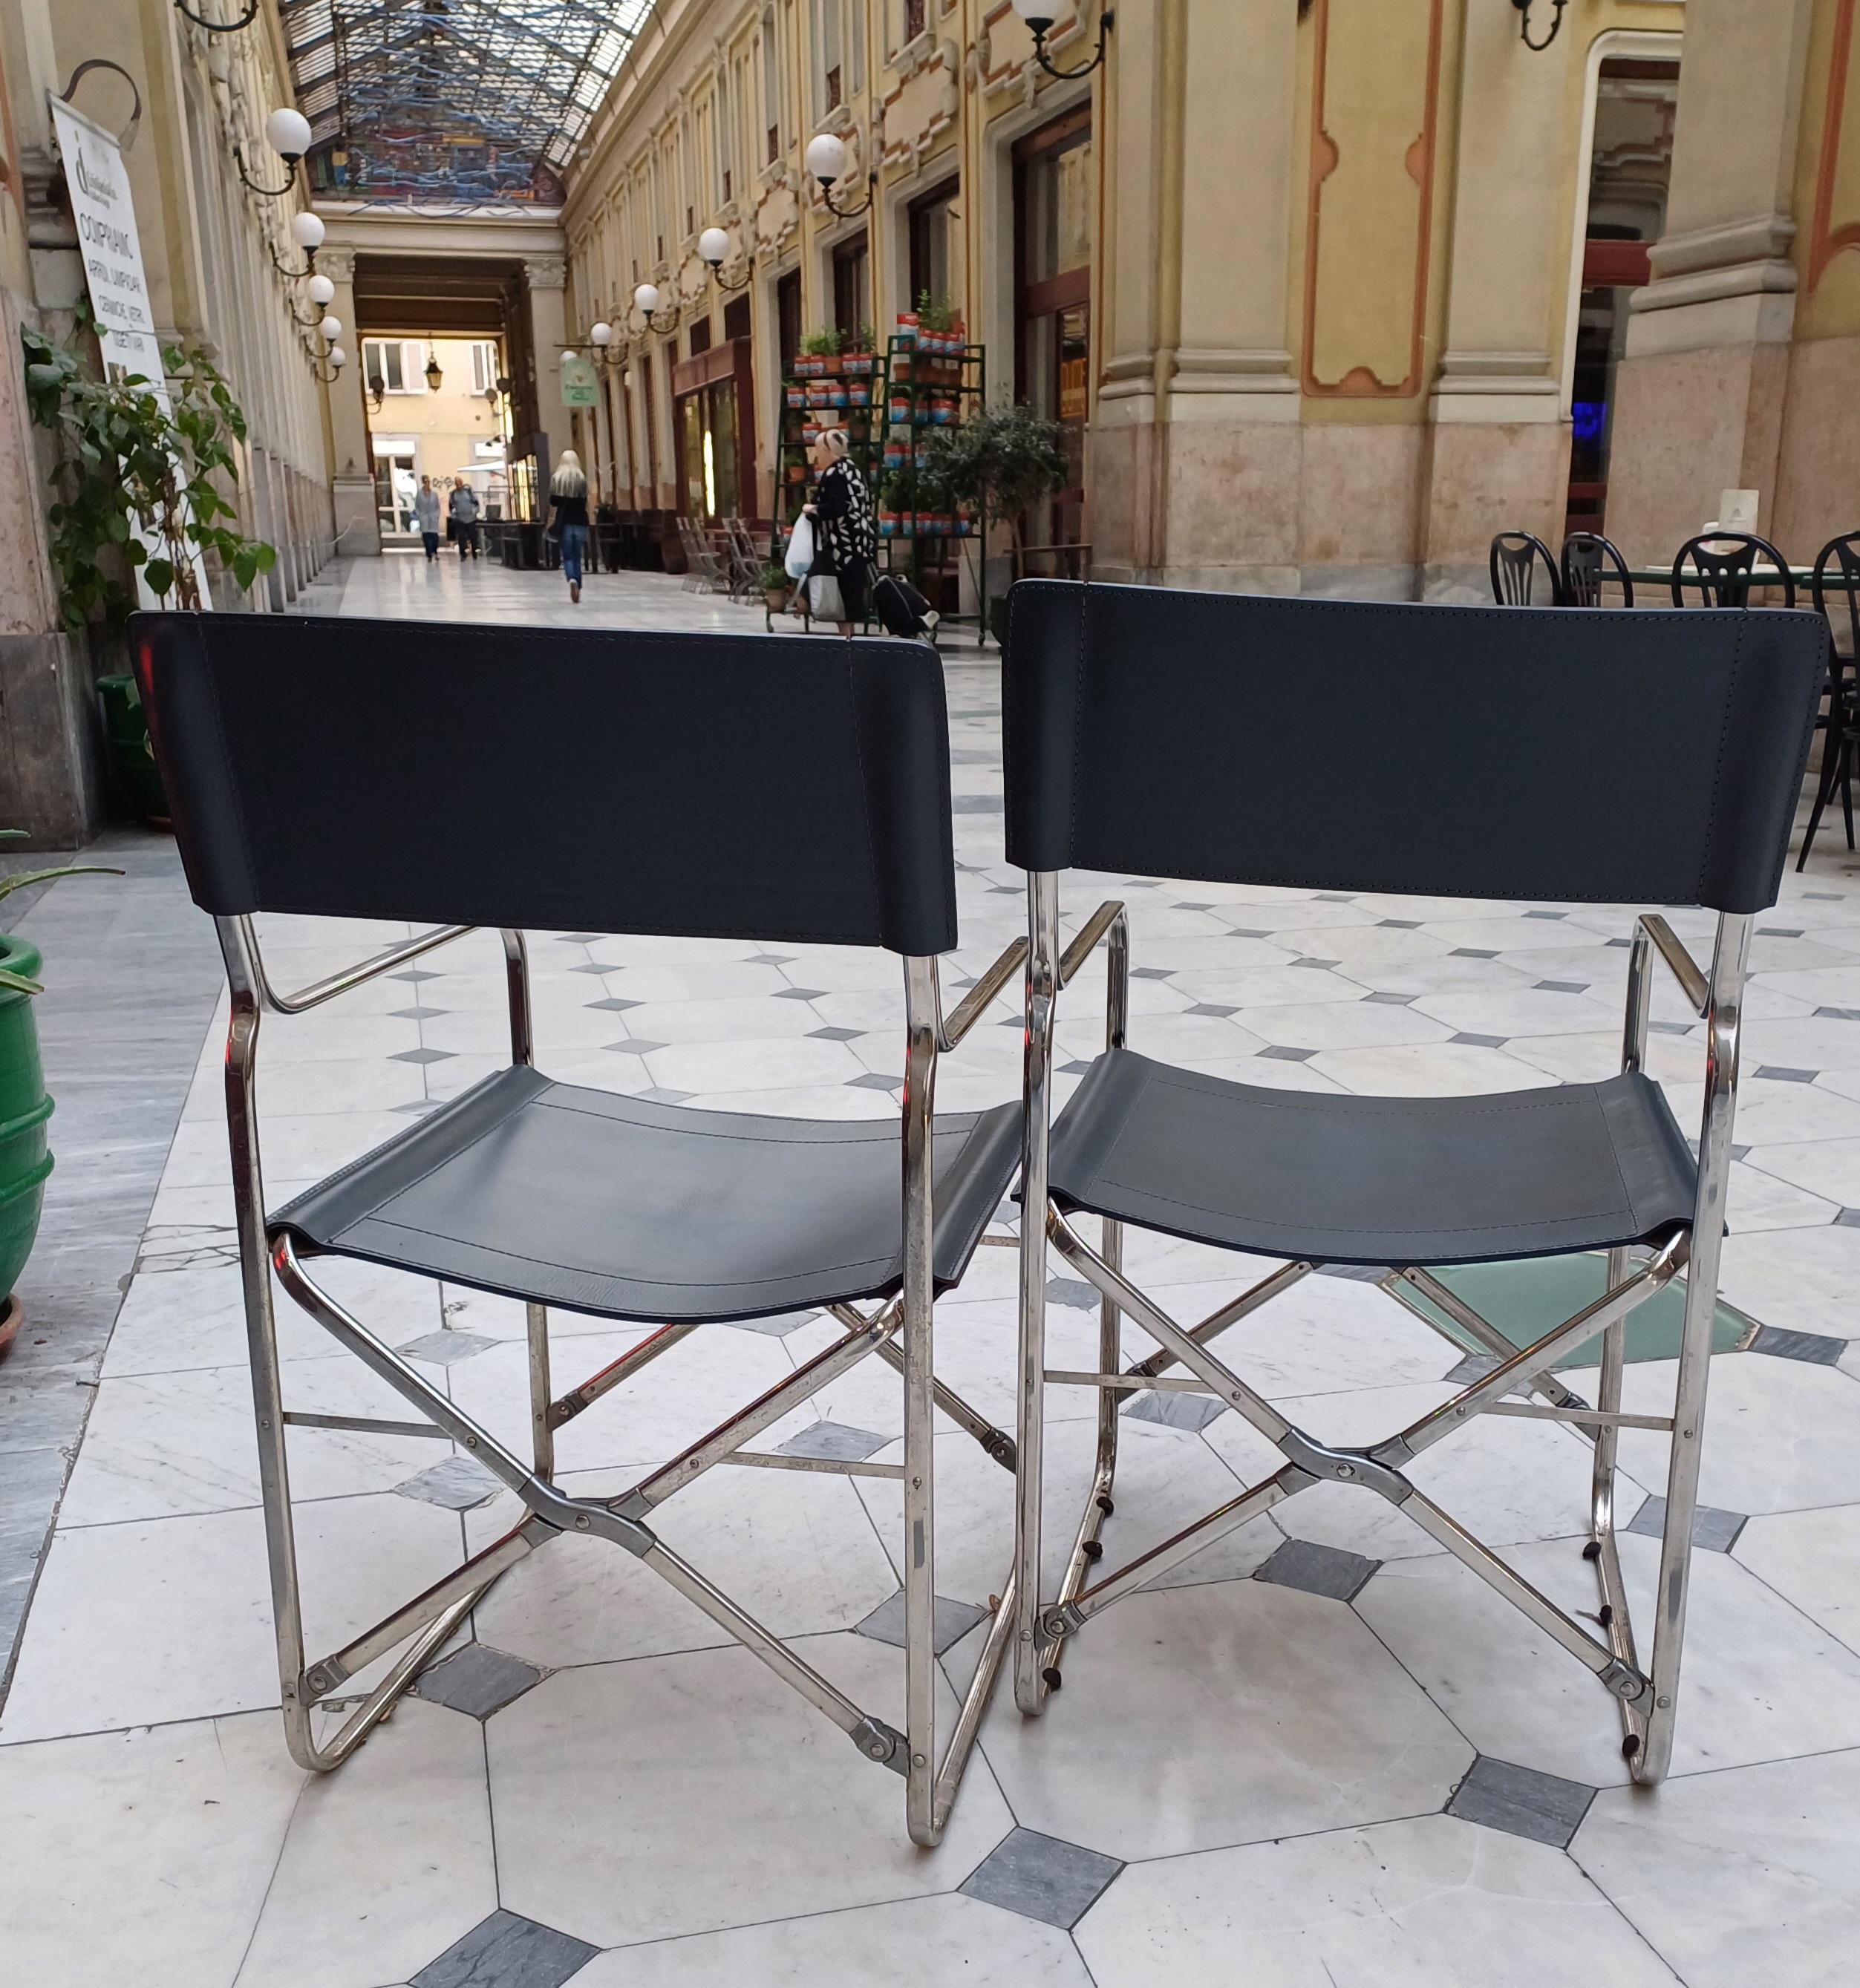 Jeu de 2 chaises pliantes modèle April conçu par Gae Aulenti pour Zanotta en 2000.
Structure en acier inoxydable 18/8 et articulations en alliage d'aluminium, siège en cuir gris.
Marcio Zanotta sur le dossier.